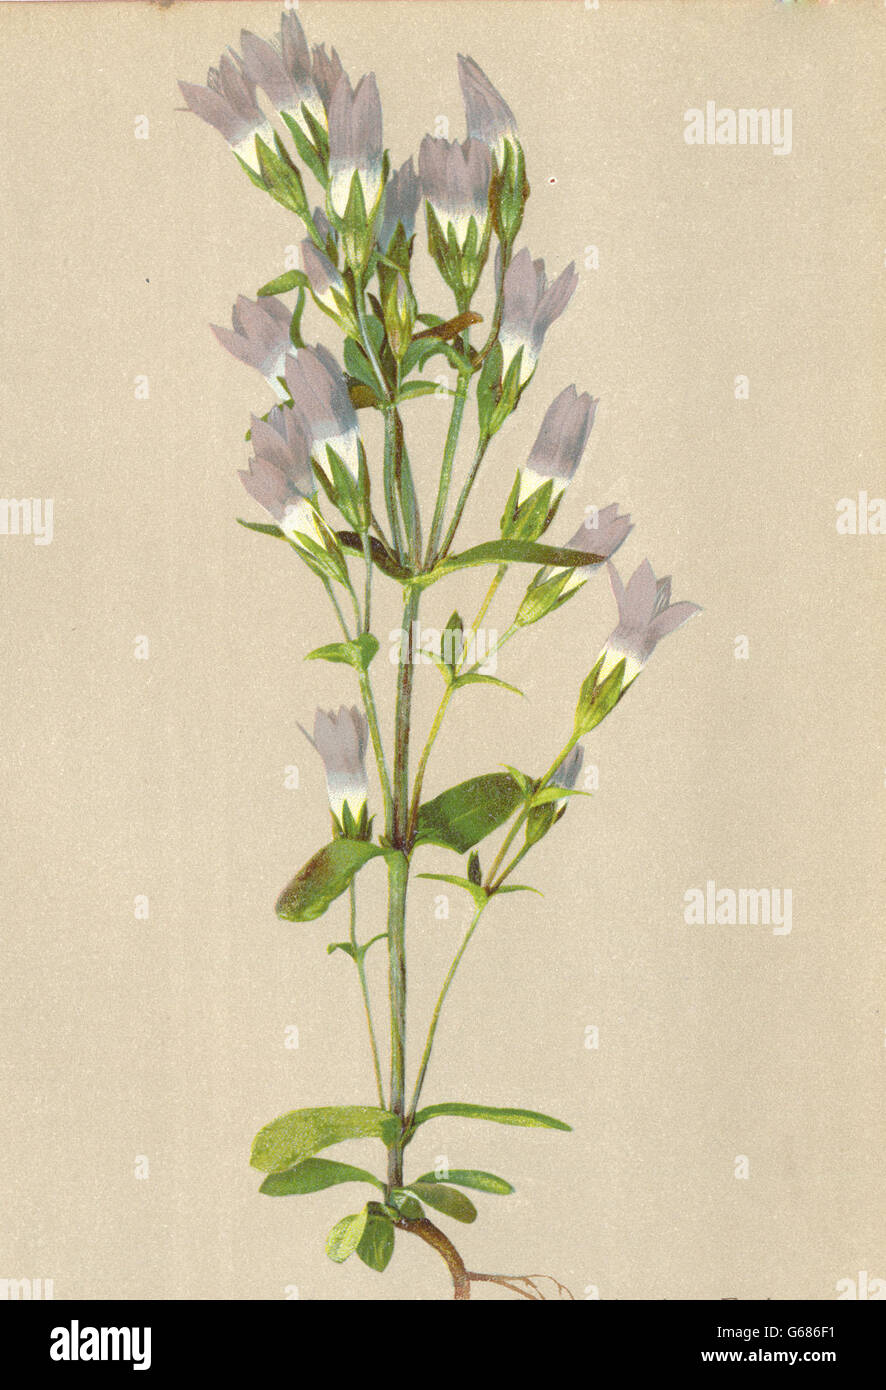 ALPENFLORA fiori alpini: Gentiana obtusifolia W-Stumpfblättriger Enzian, 1897 Foto Stock